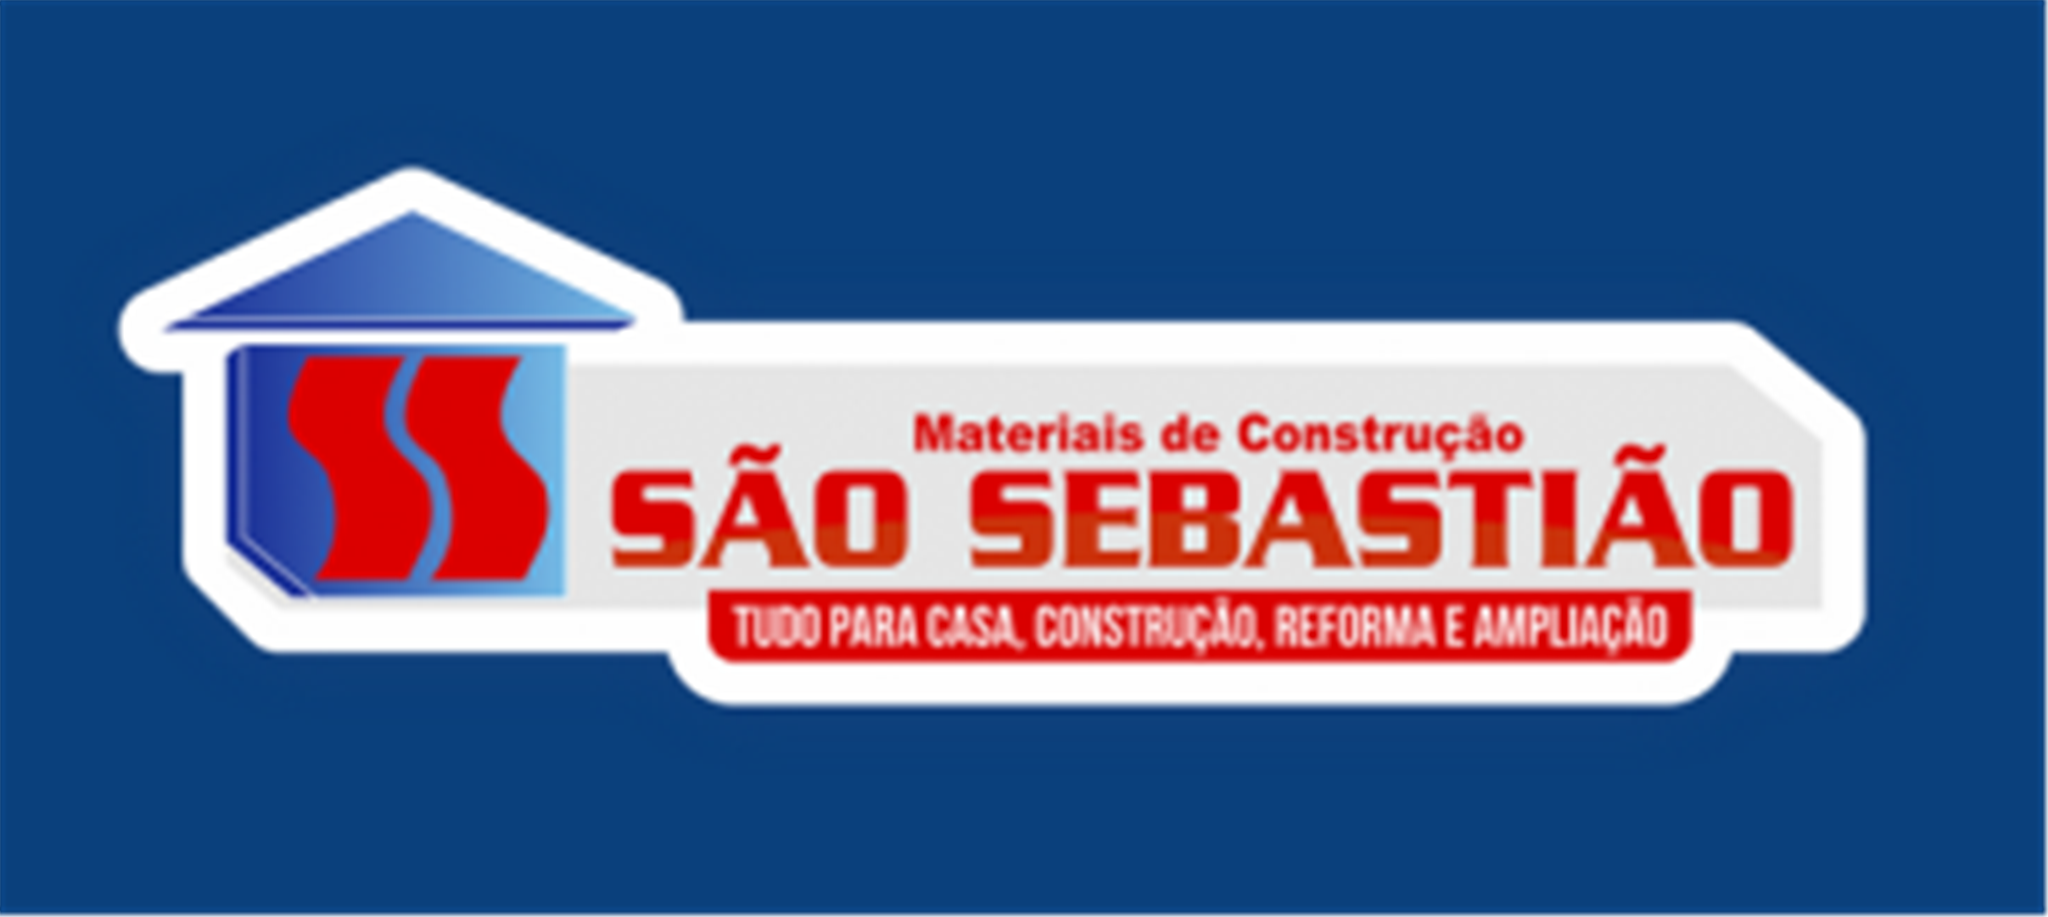 Materiais de Construção São Sebastião